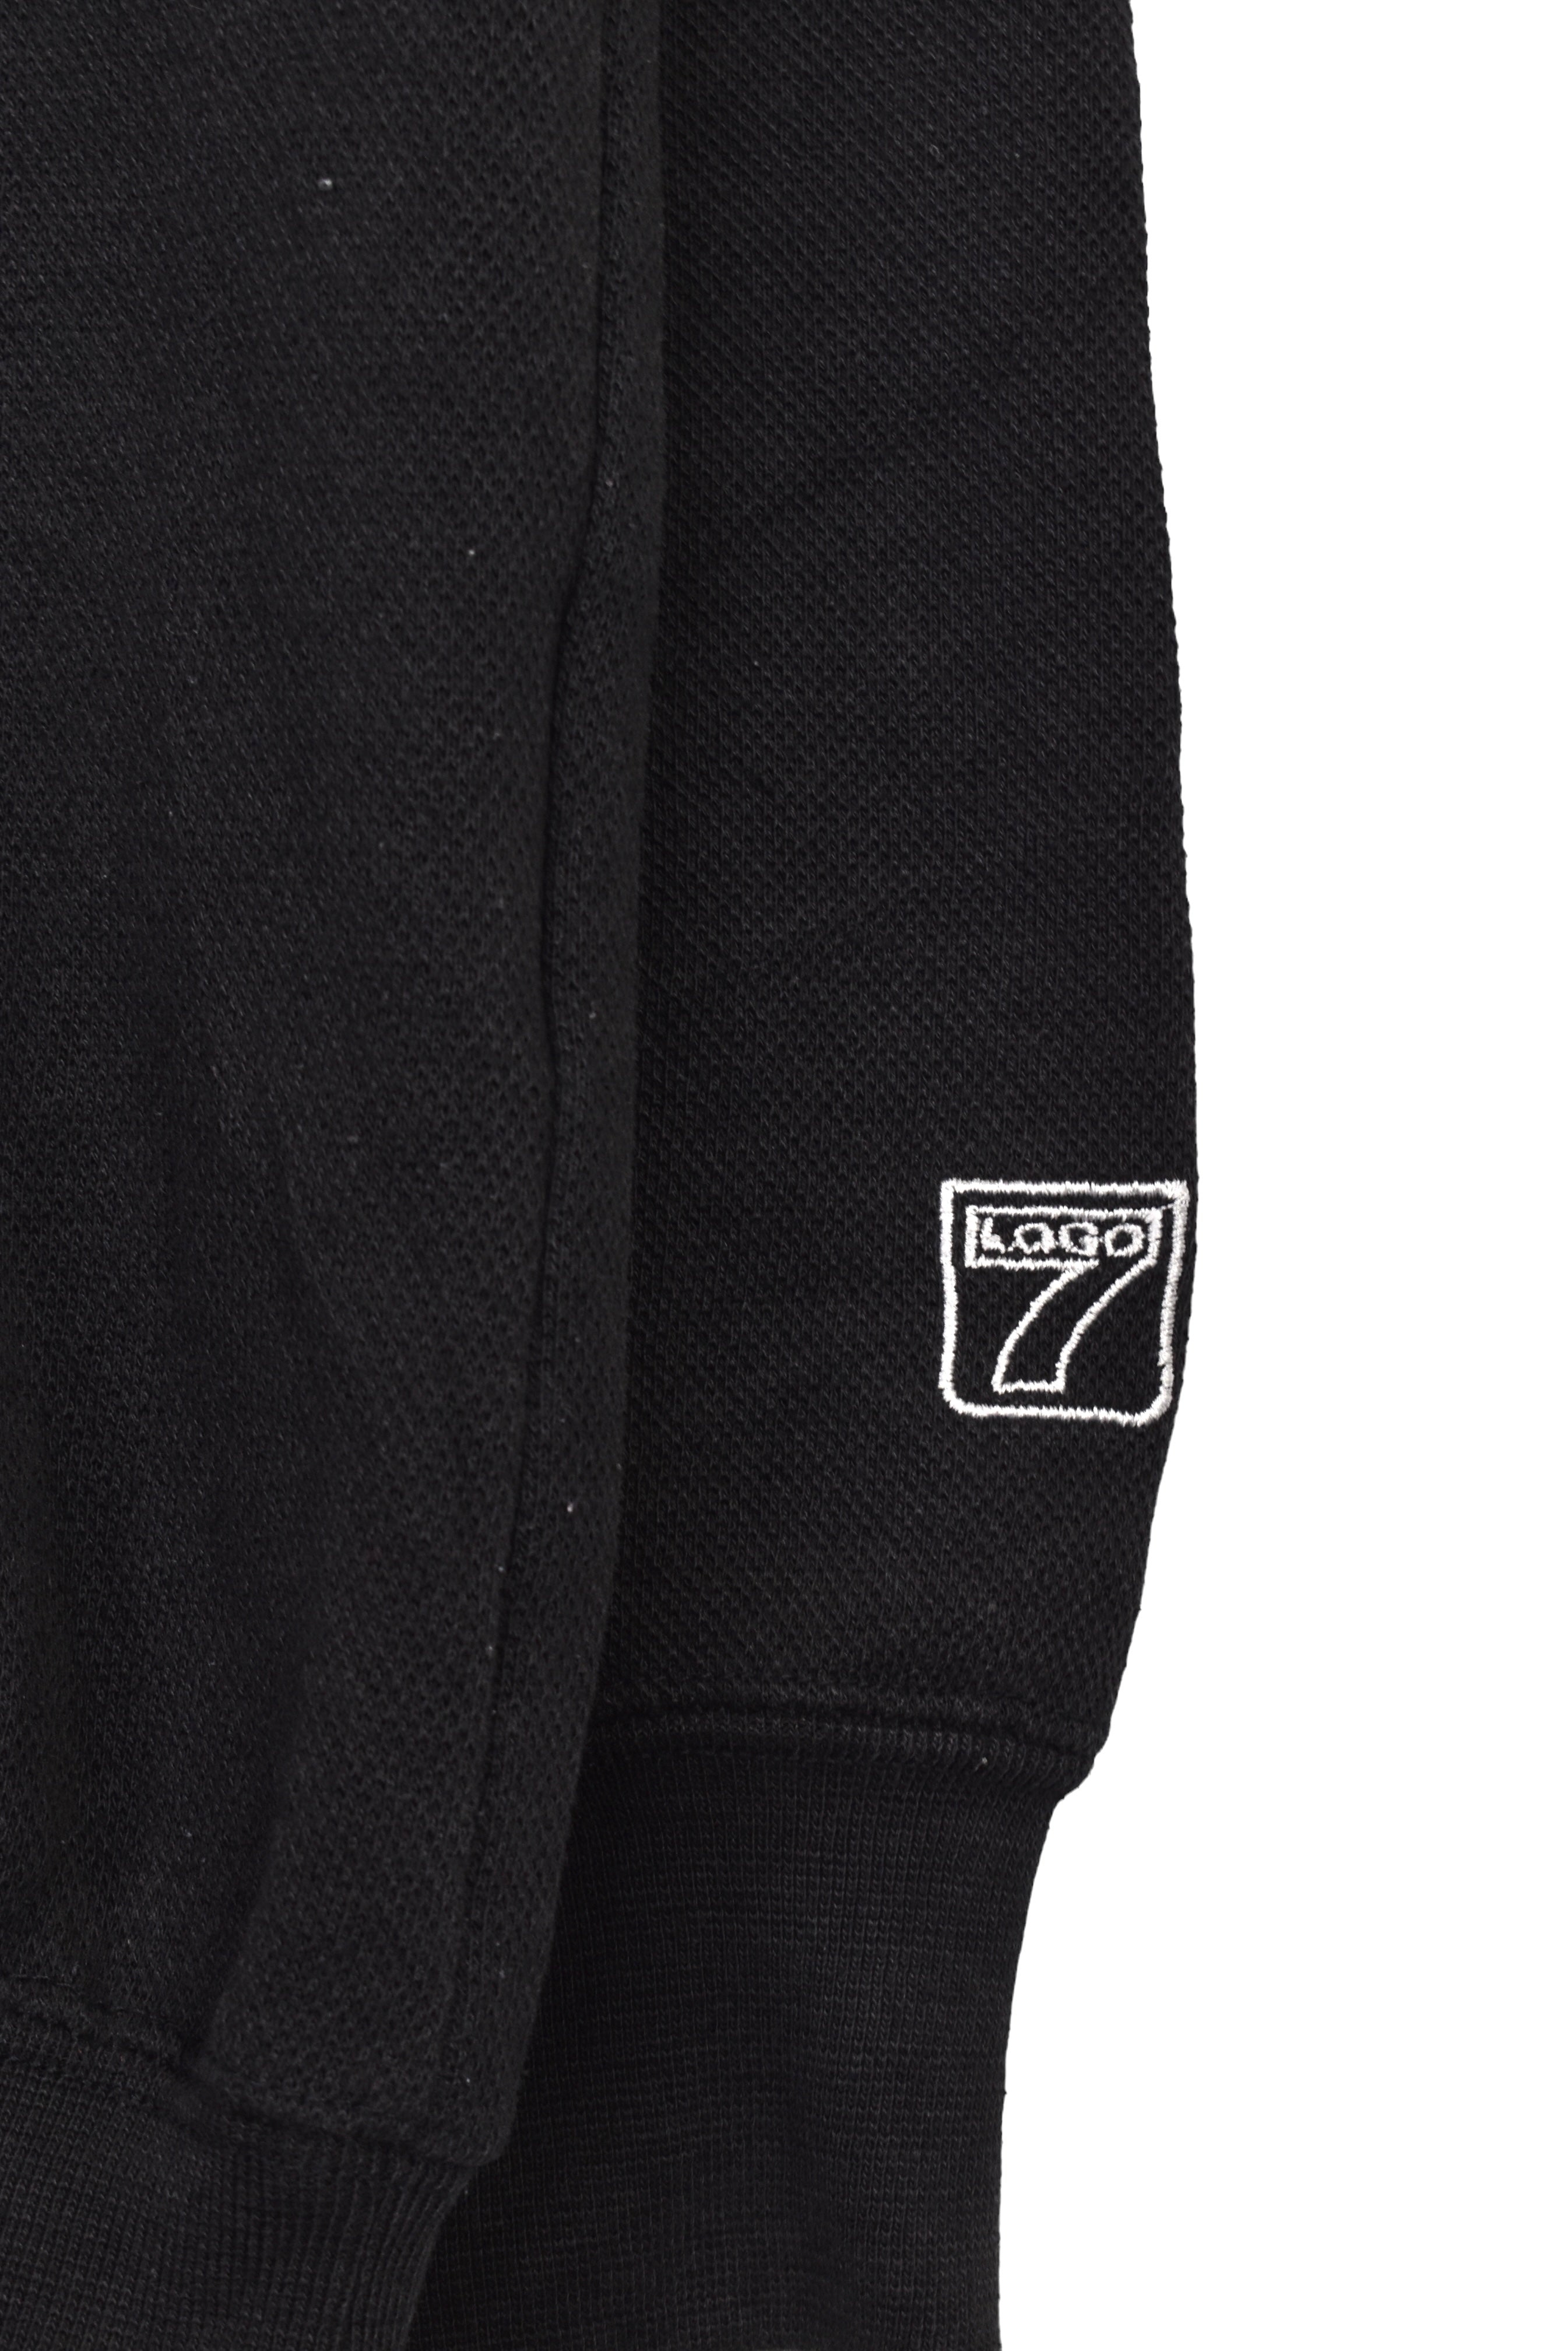 Vintage Oakland Raiders sweatshirt (M), black NFL embroidered crewneck